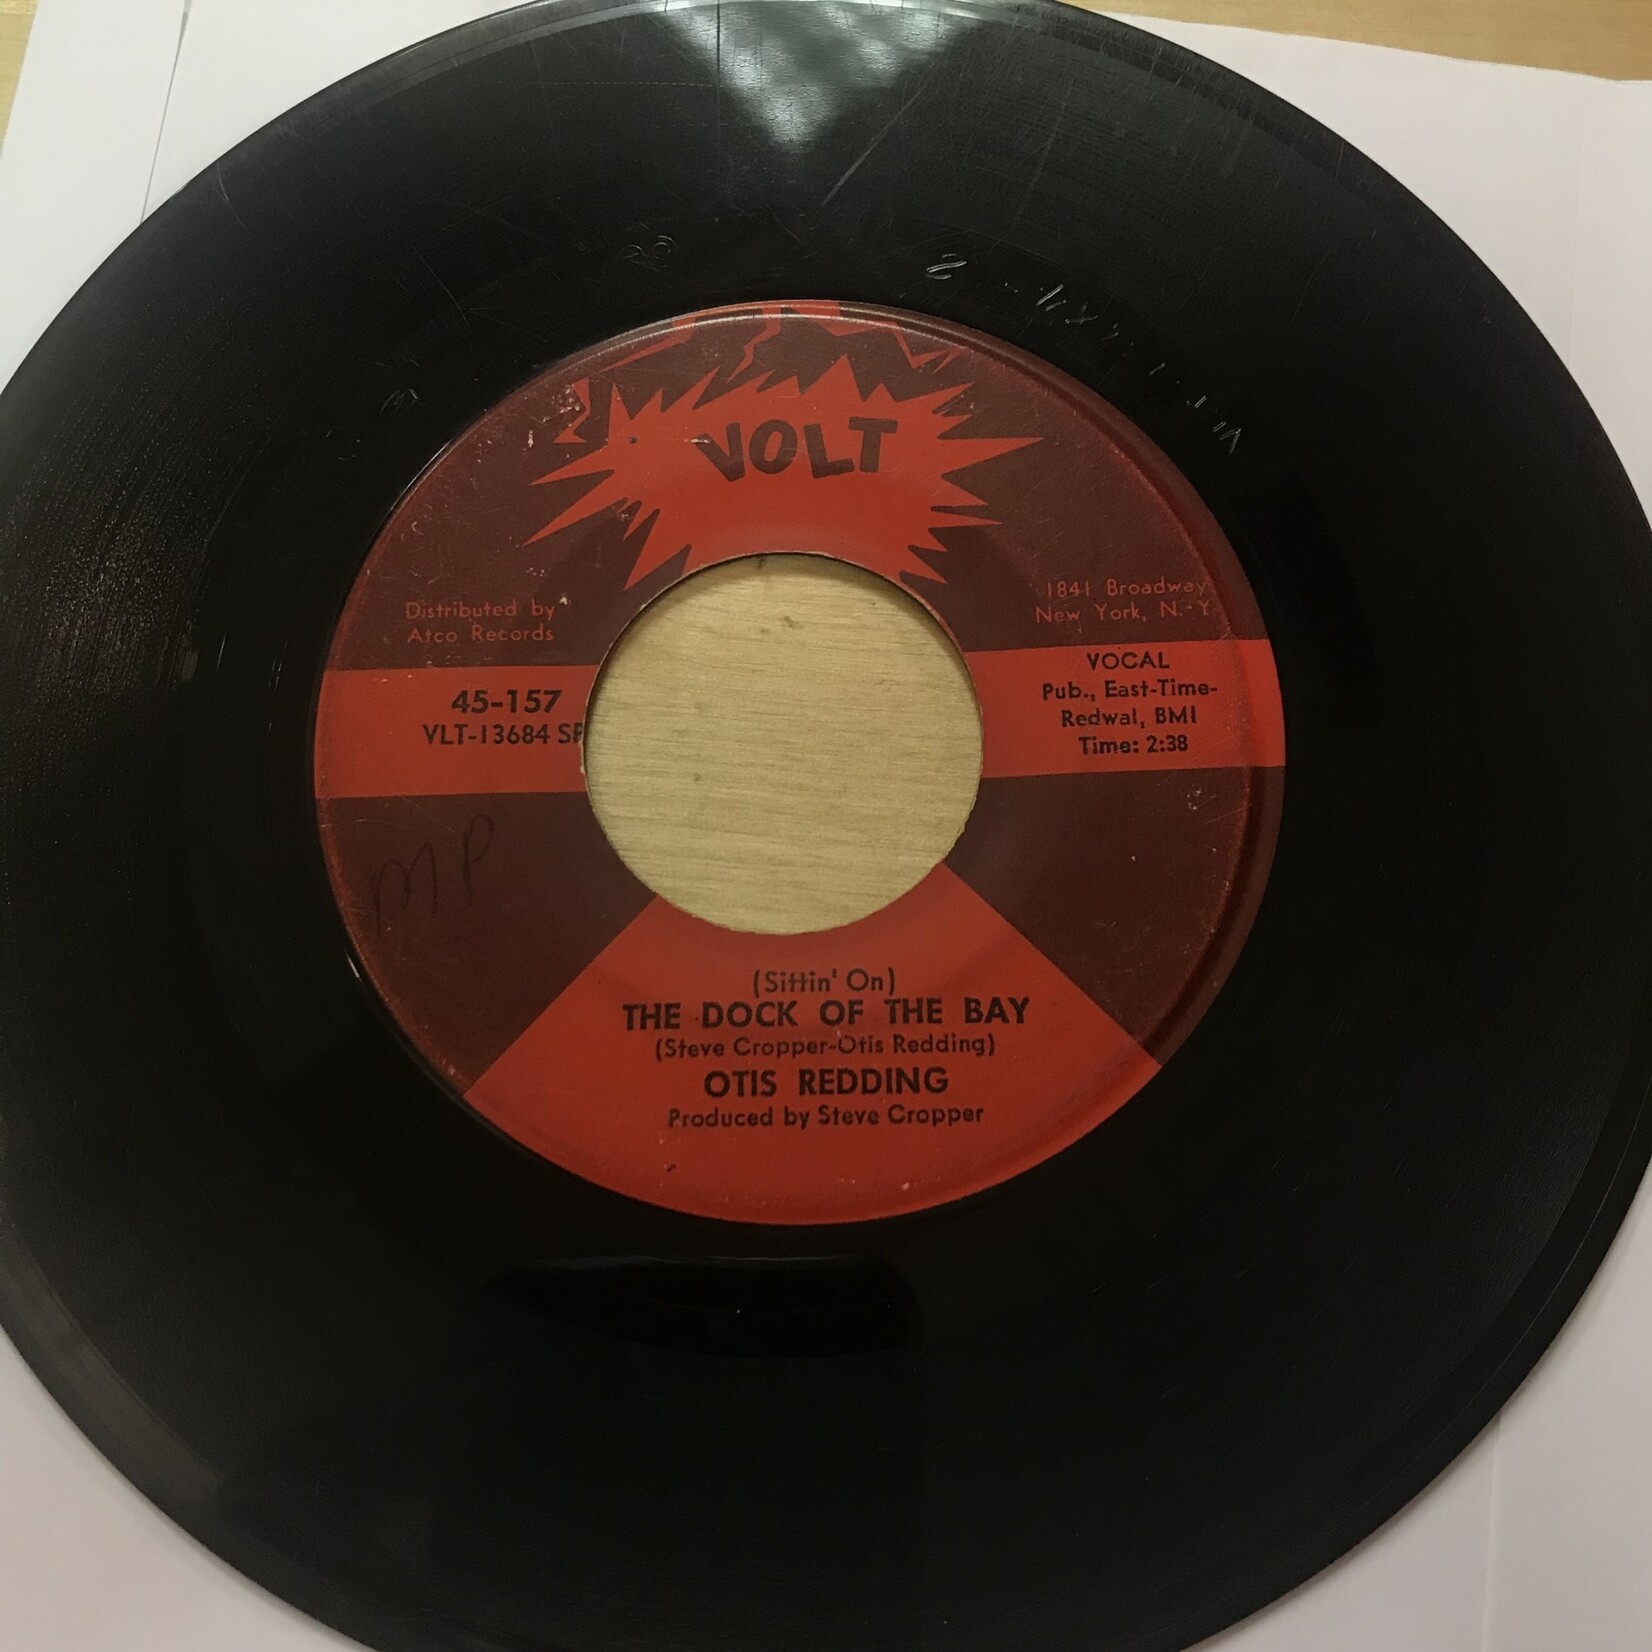 Otis Redding - Dock Of The Bay / Sweet Lorraine - VLT 13684 SP - Vinyl 45 (USED)